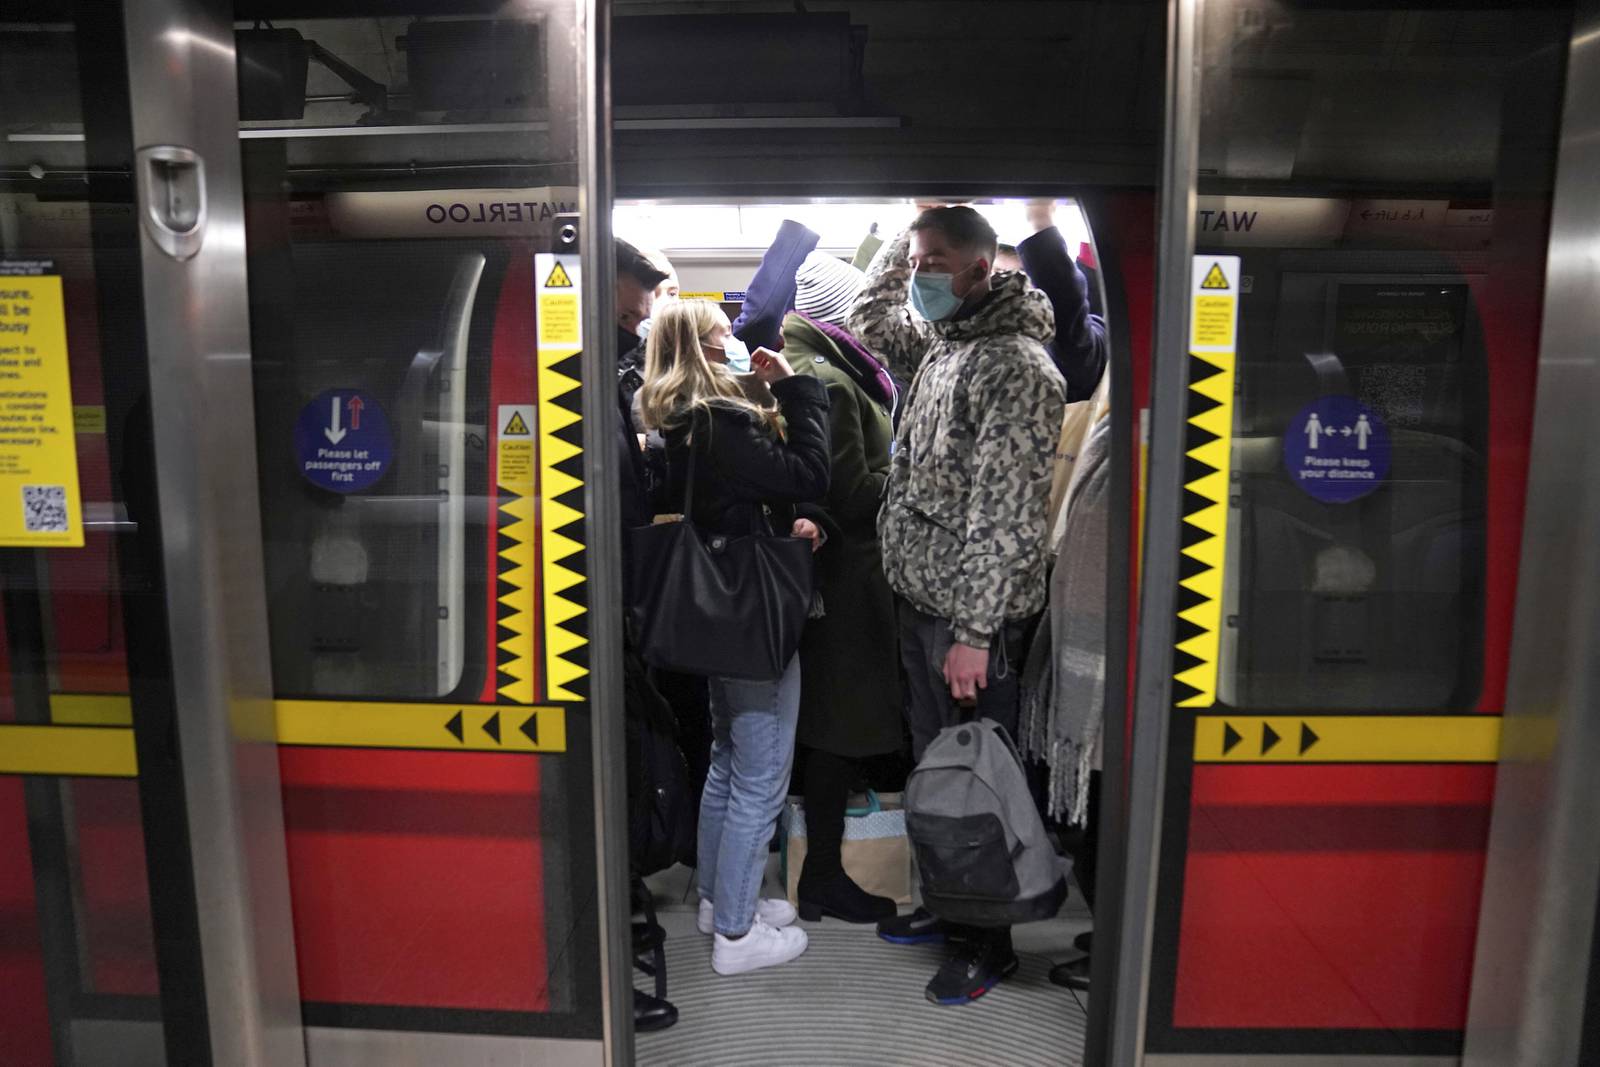 tube strikes london jubilee weekend - photo #6